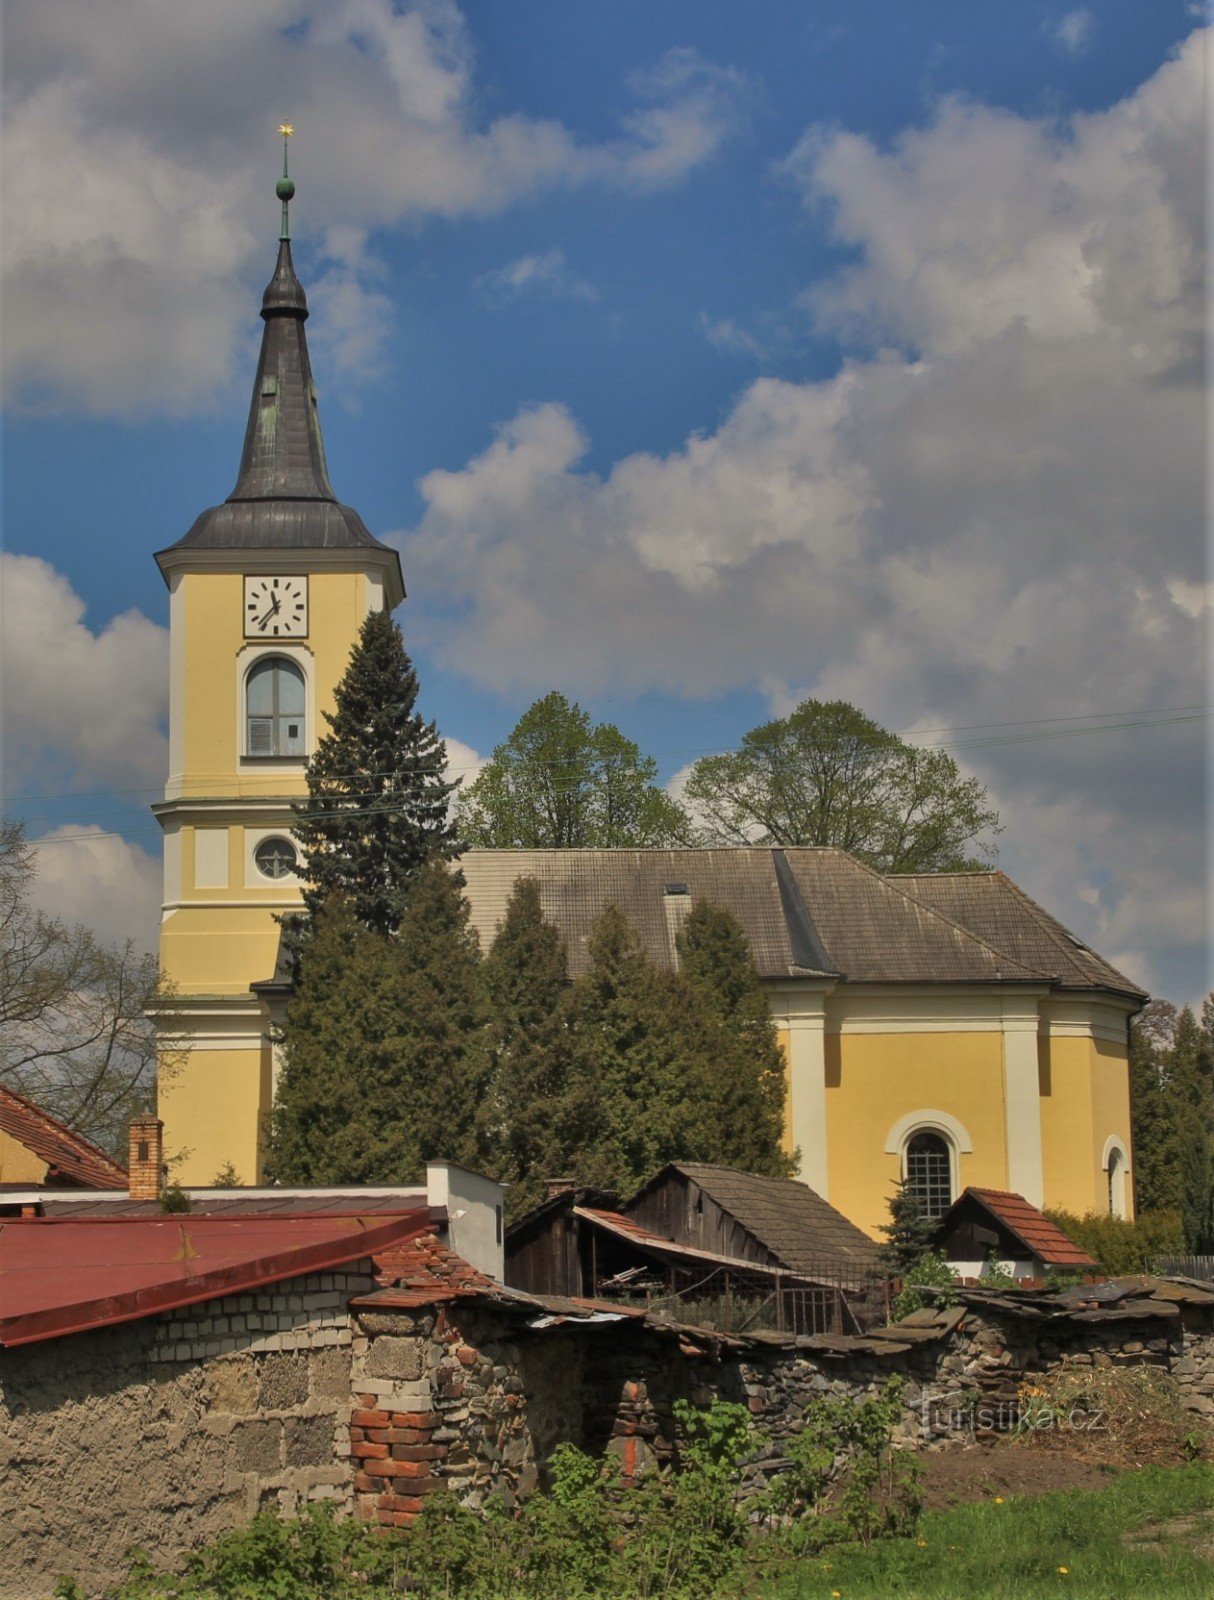 市場から見た福音派教会の全景